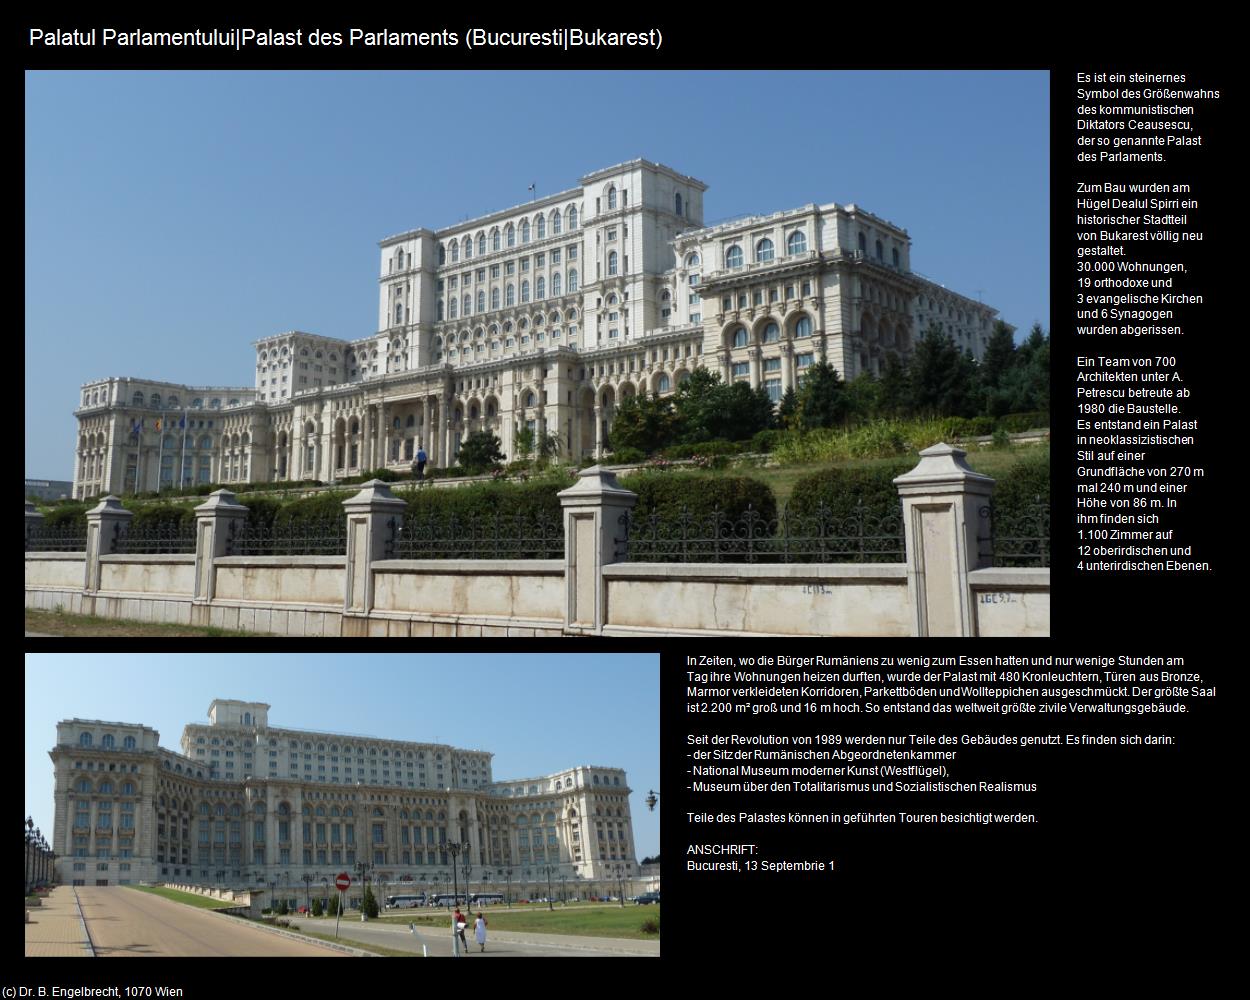 Palatul Parlamentului|Palast des Parlaments  (Bucuresti|Bukarest) in RUMÄNIEN